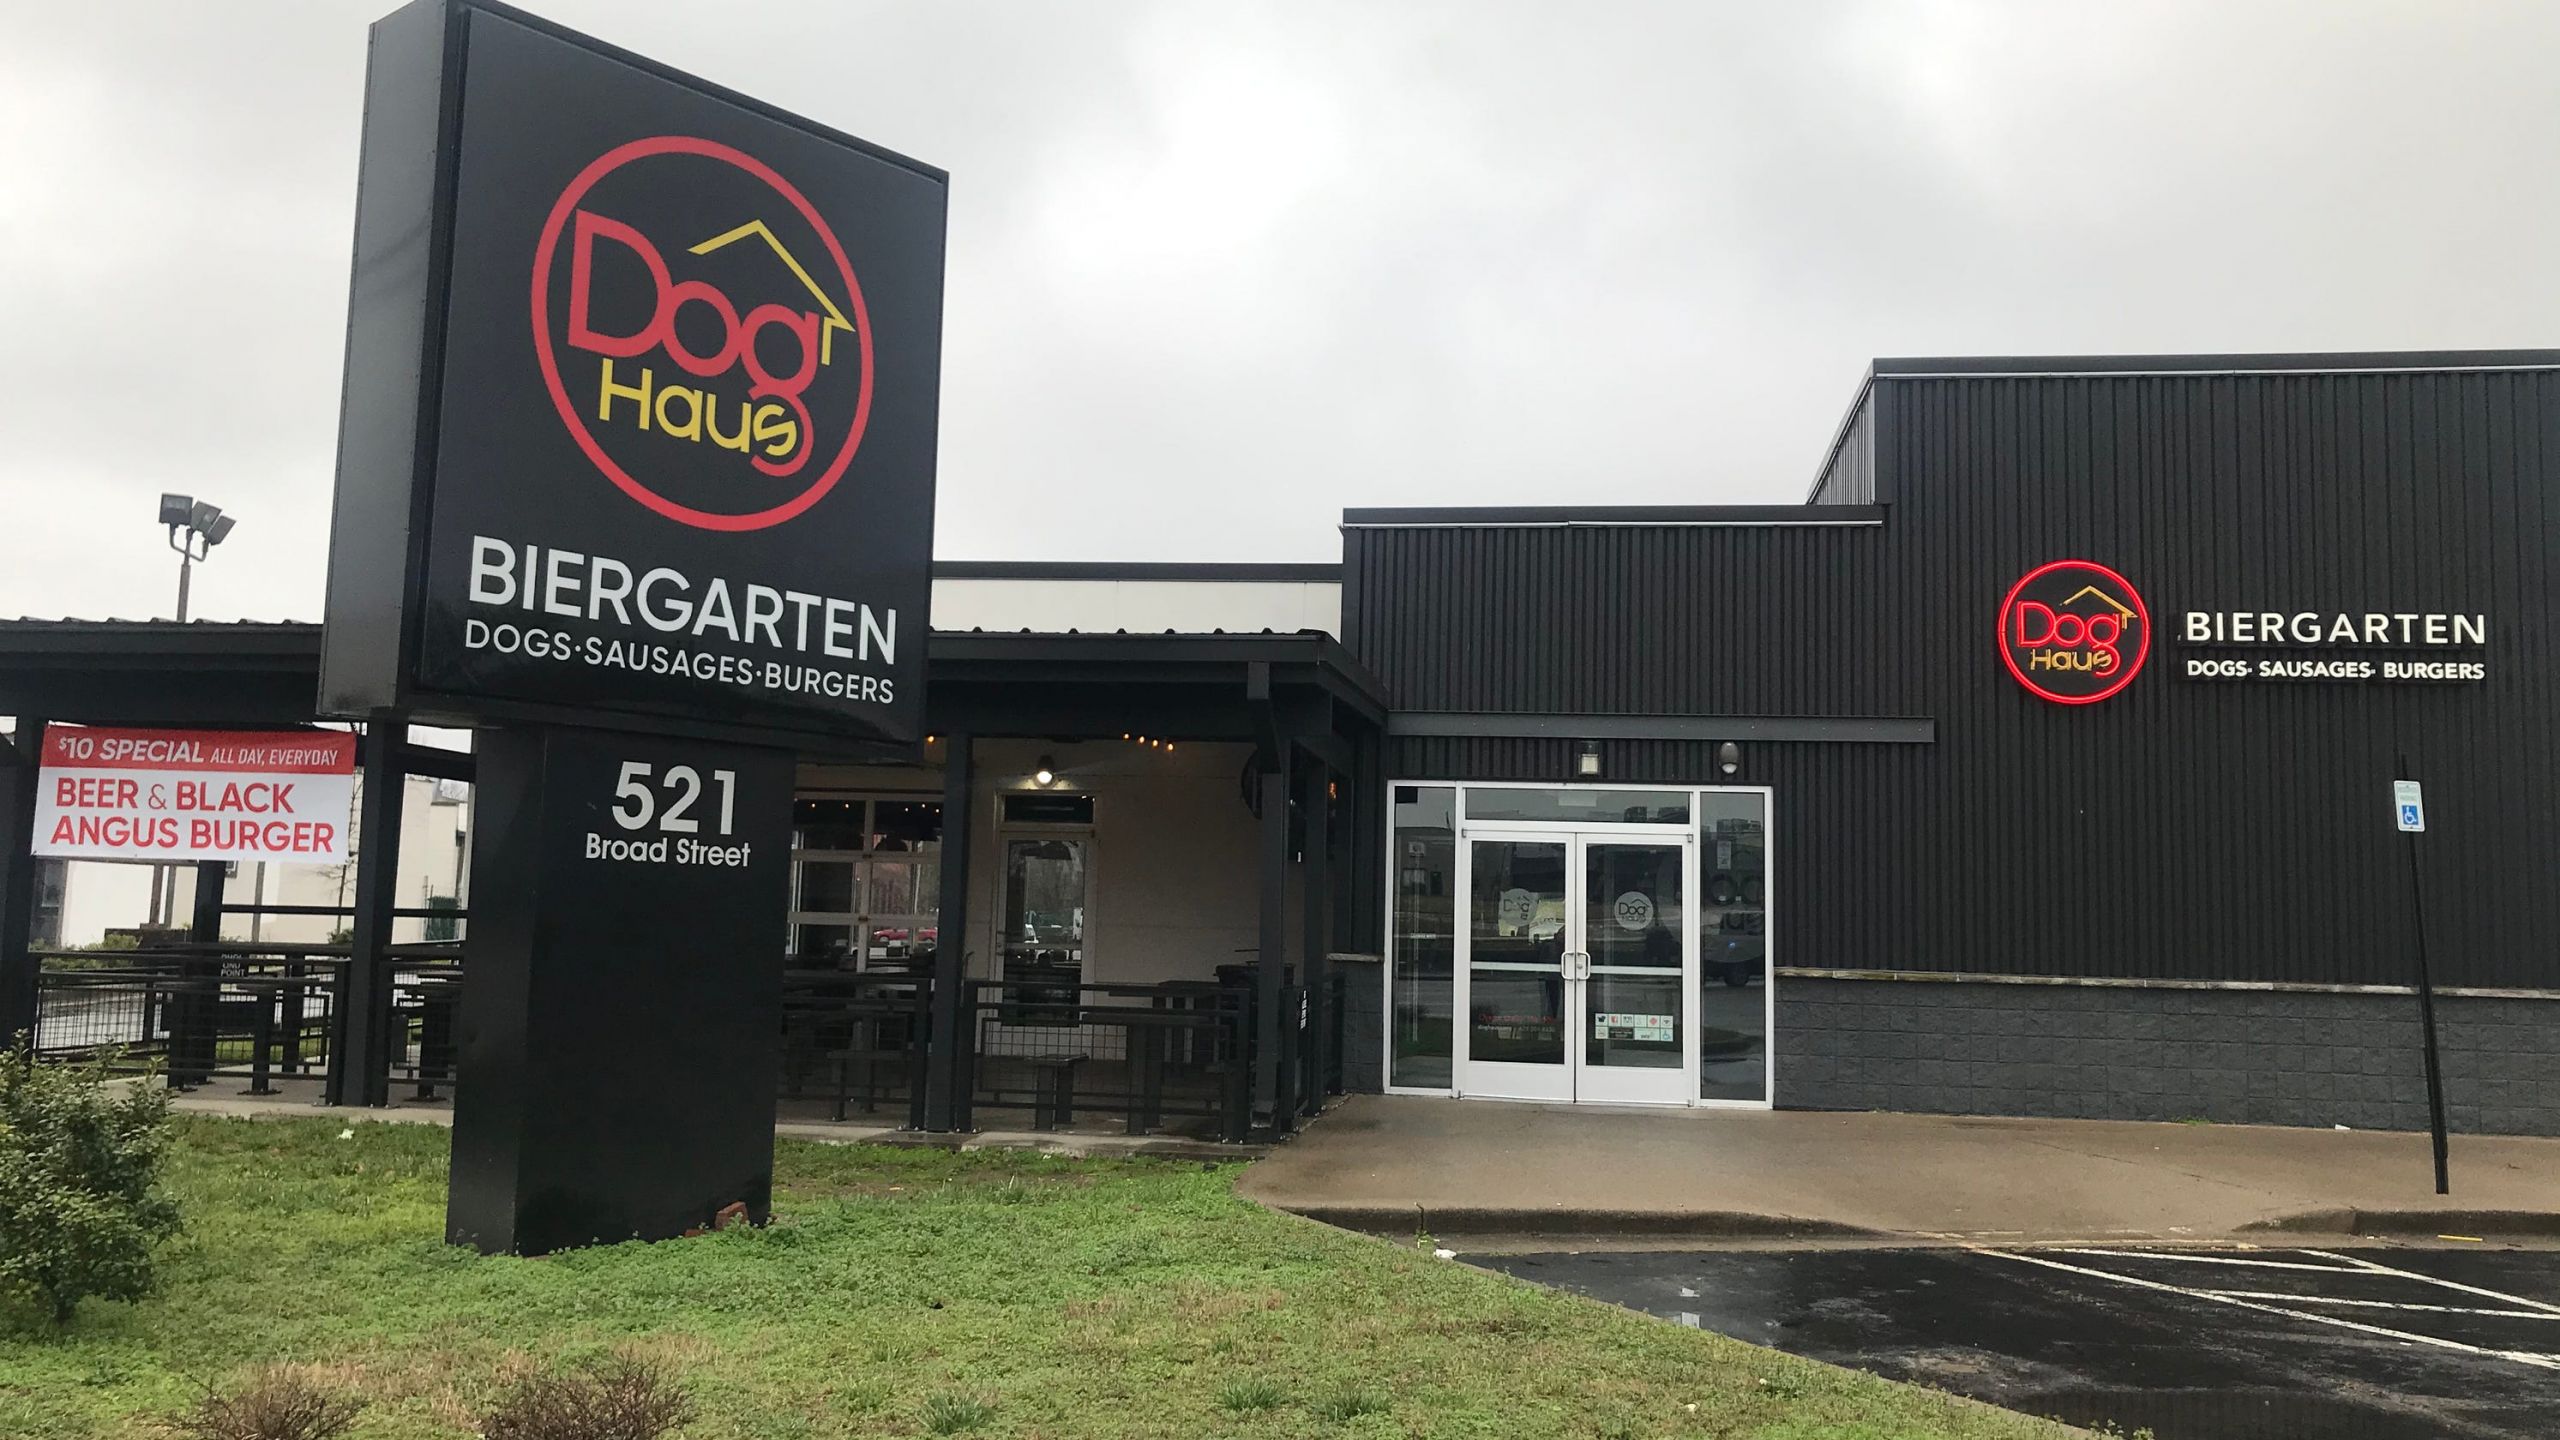 Reihenhaus Garten Neu Dog Haus Biergarten In Murfreesboro Closes Again for Good